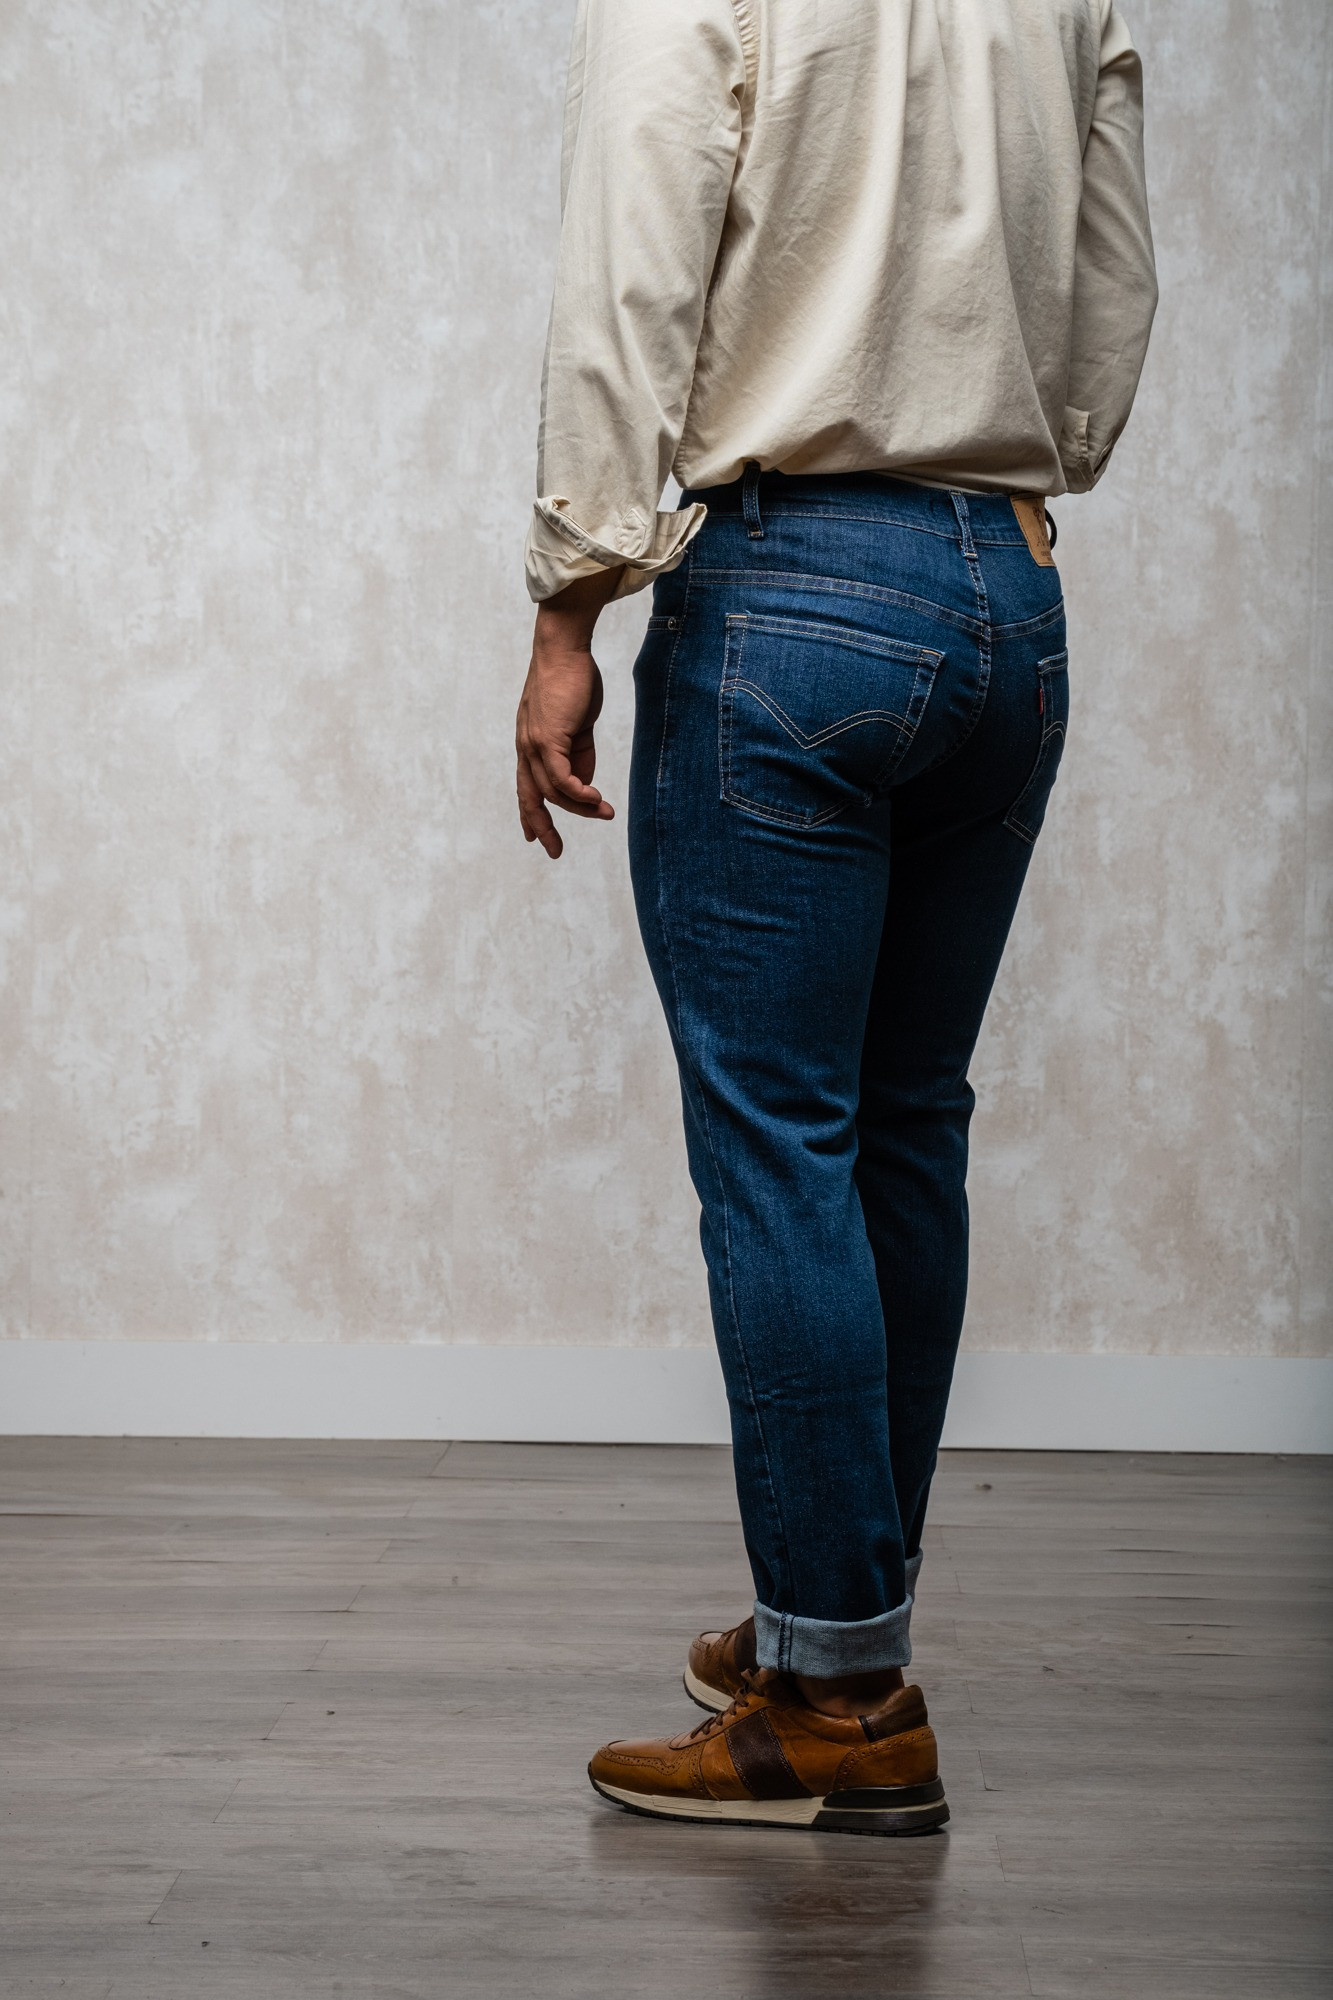 Los pantalones vaqueros de patrón regular son una opción clásica y versátil para cualquier guardarropa. Estos pantalones están diseñados para tener un ajuste regular en la cintura y las piernas, lo que los hace ideales para aquellos que buscan una opción 